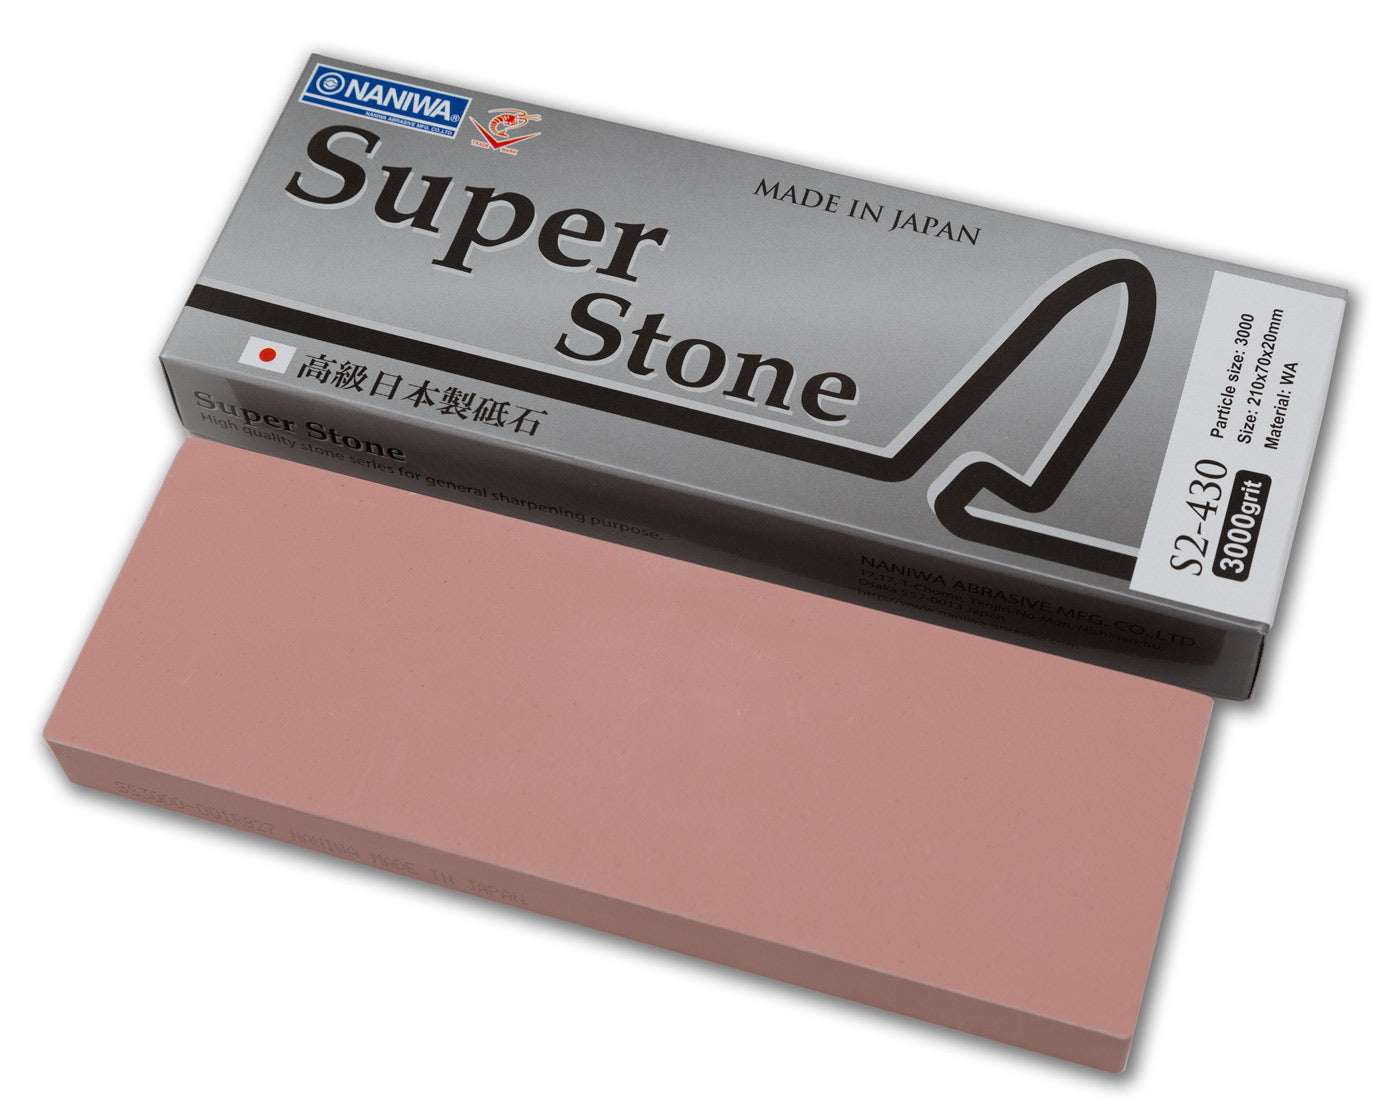 Japanese whetstone sharpening stone #1000 for High Speedo Stone